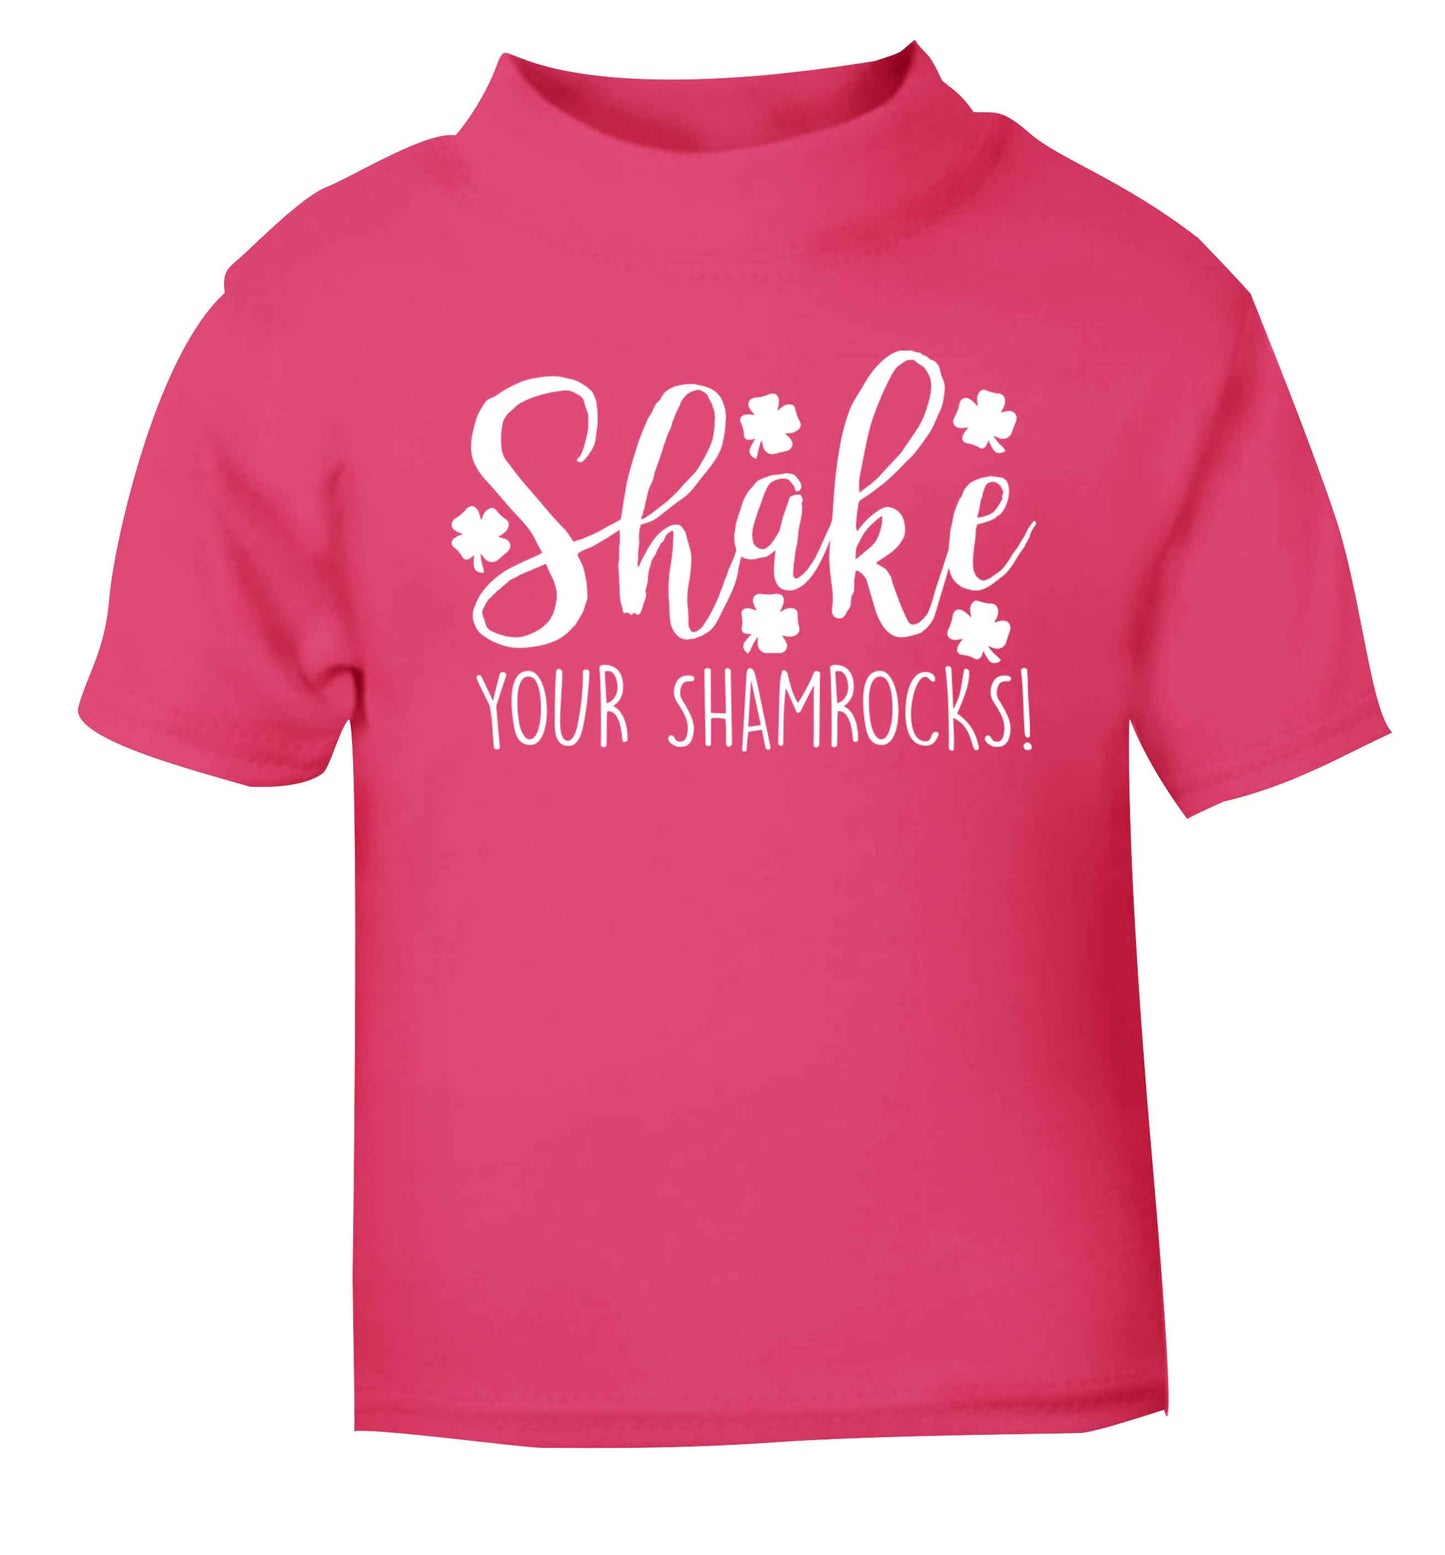 Shake your shamrocks pink baby toddler Tshirt 2 Years